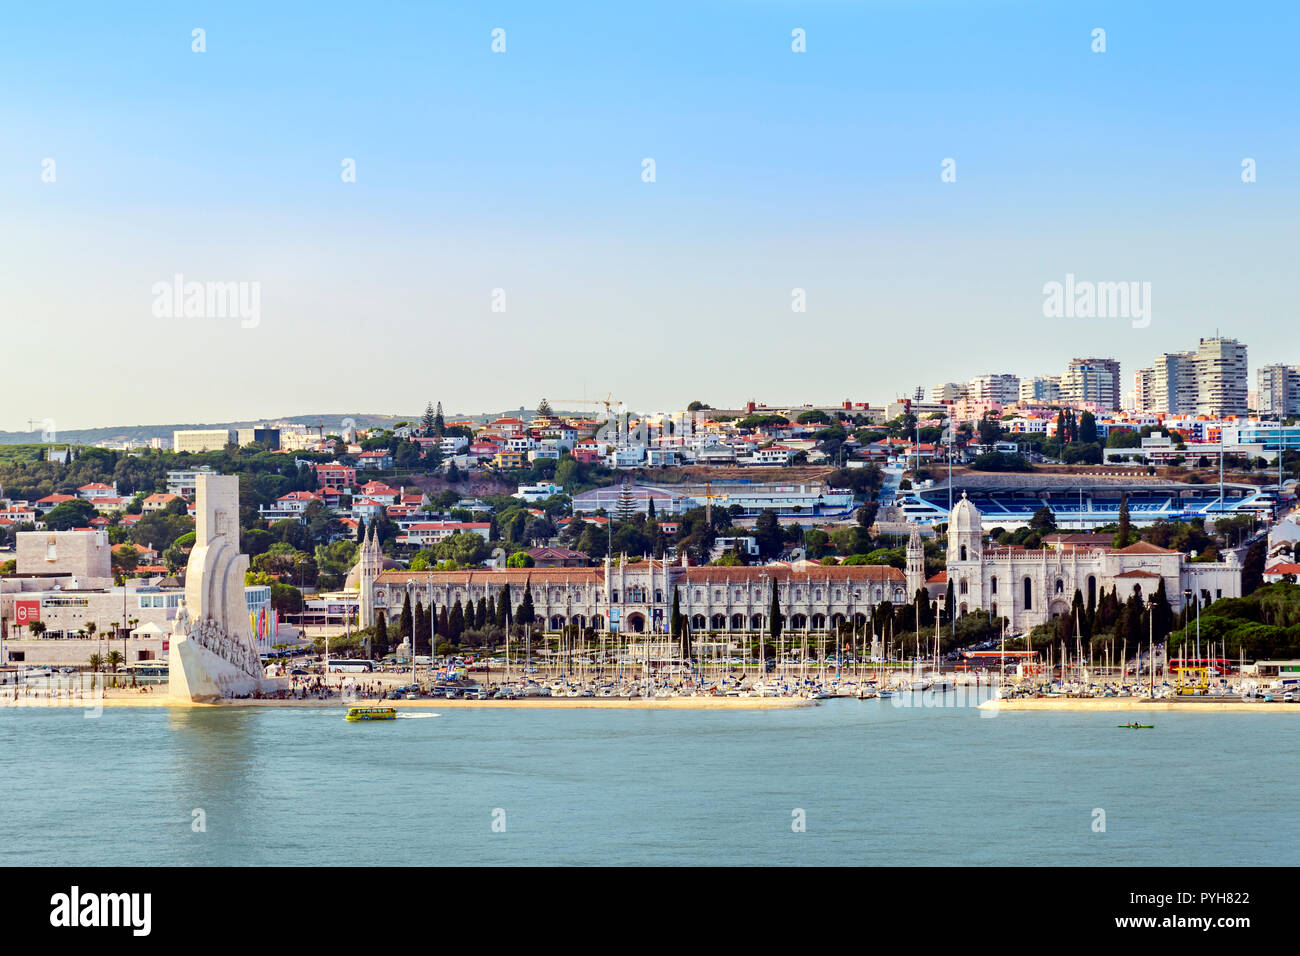 Le Christ rédempteur statue sur les rives du Tage, Lisbonne Portugal Banque D'Images